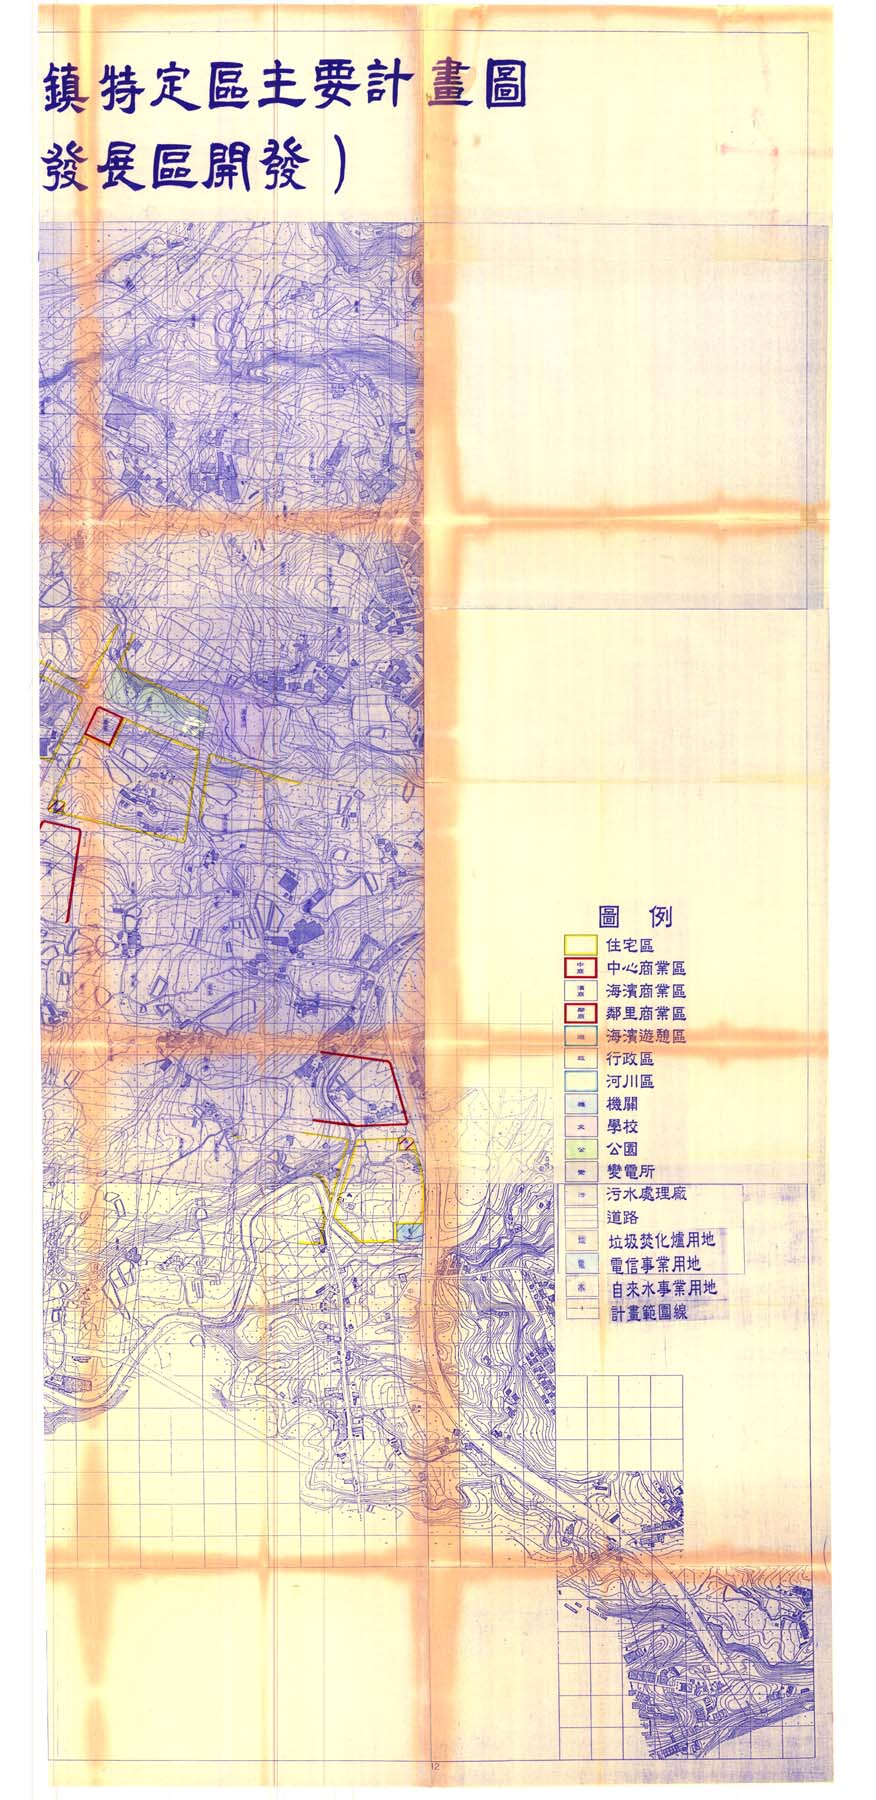 擴大暨變更淡海新市鎮特定區主要計畫圖(配合第一期發展區開發)2-2